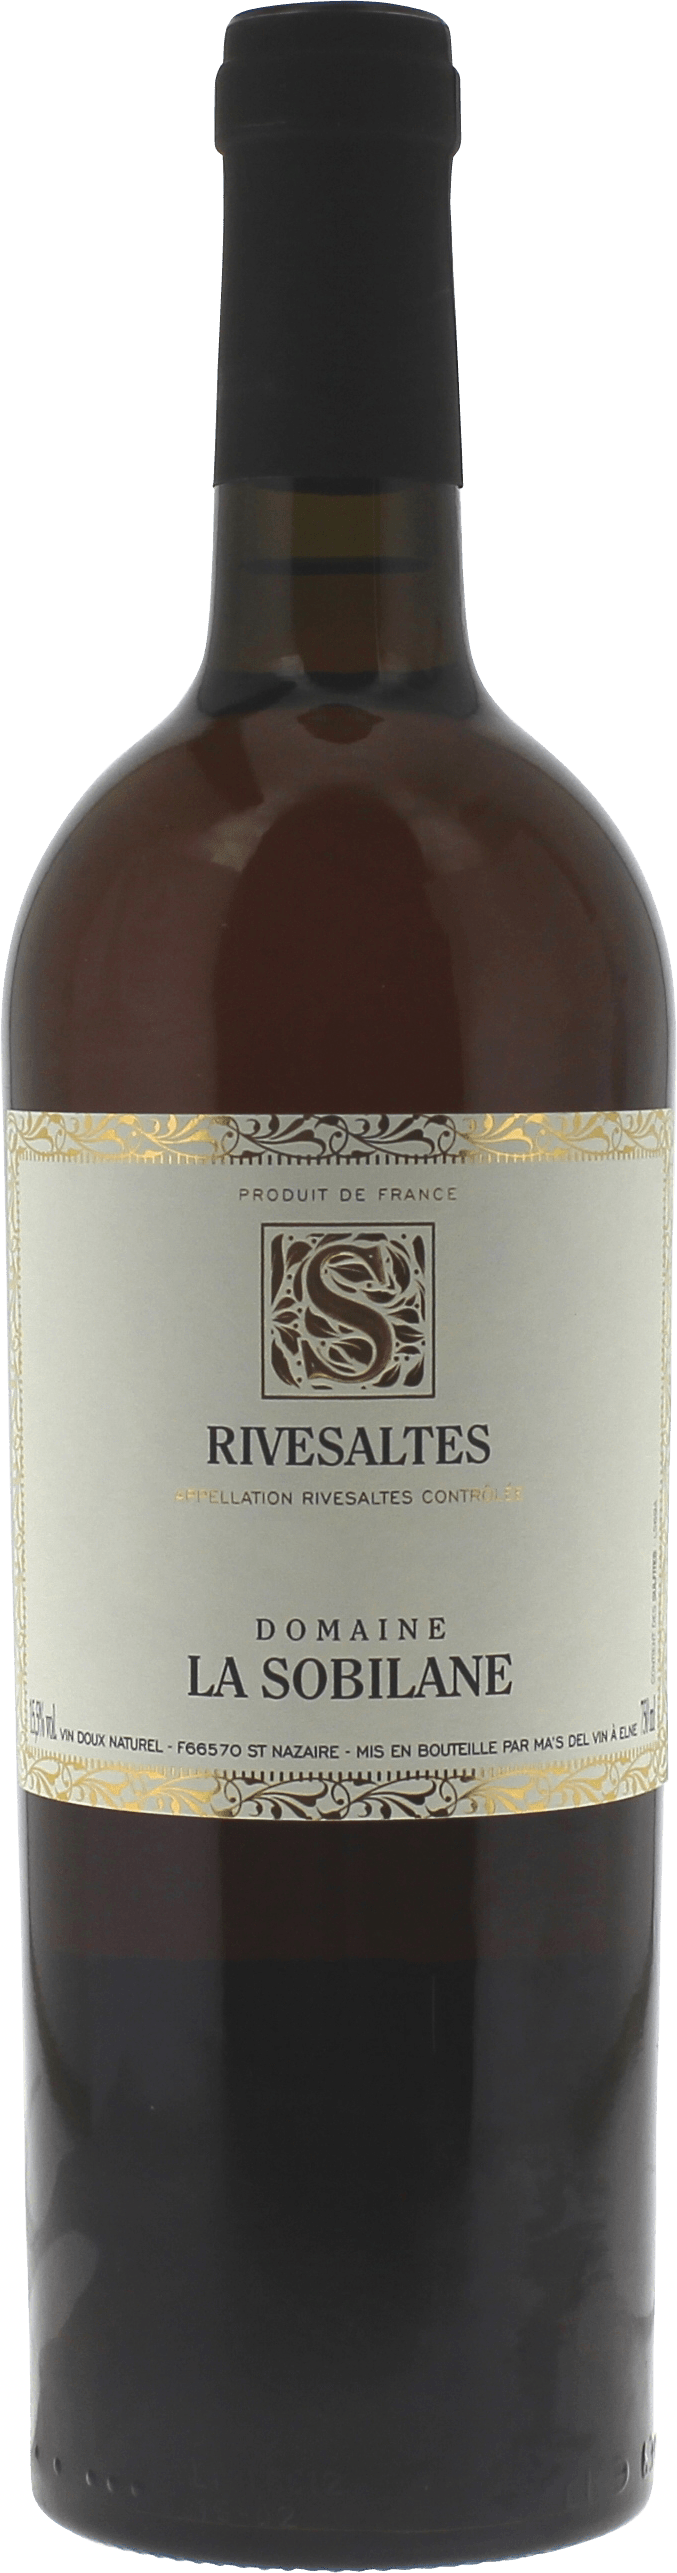 Rivesaltes domaine la sobilane 1952 Vin doux naturel Rivesaltes, Vin doux naturel